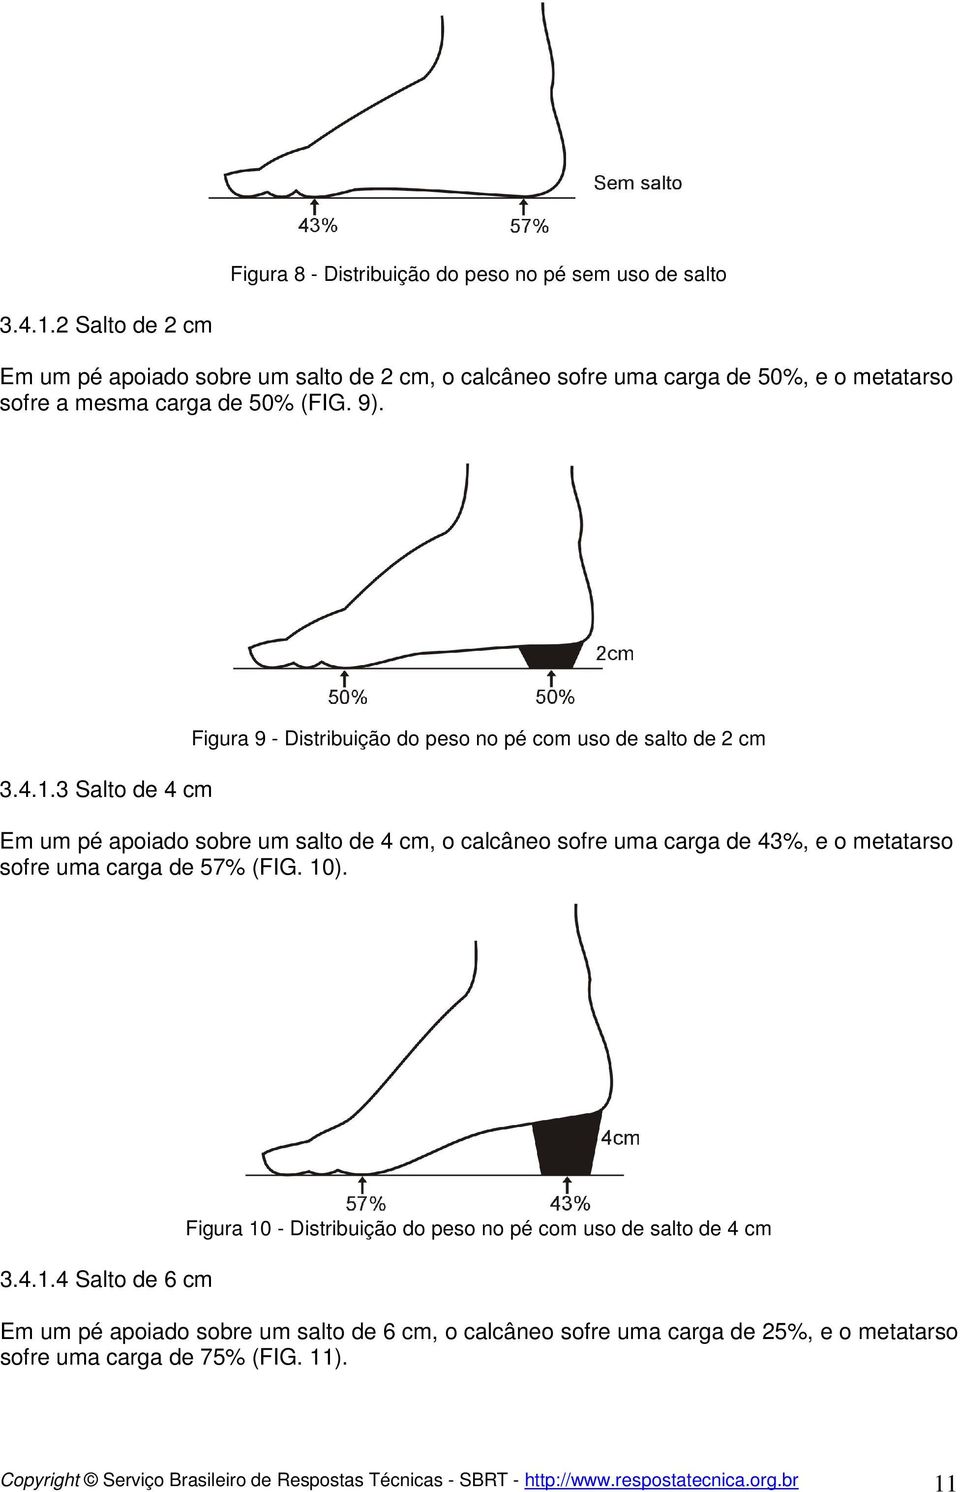 3 Salto de 4 cm Figura 9 - Distribuição do peso no pé com uso de salto de 2 cm Em um pé apoiado sobre um salto de 4 cm, o calcâneo sofre uma carga de 43%, e o metatarso sofre uma